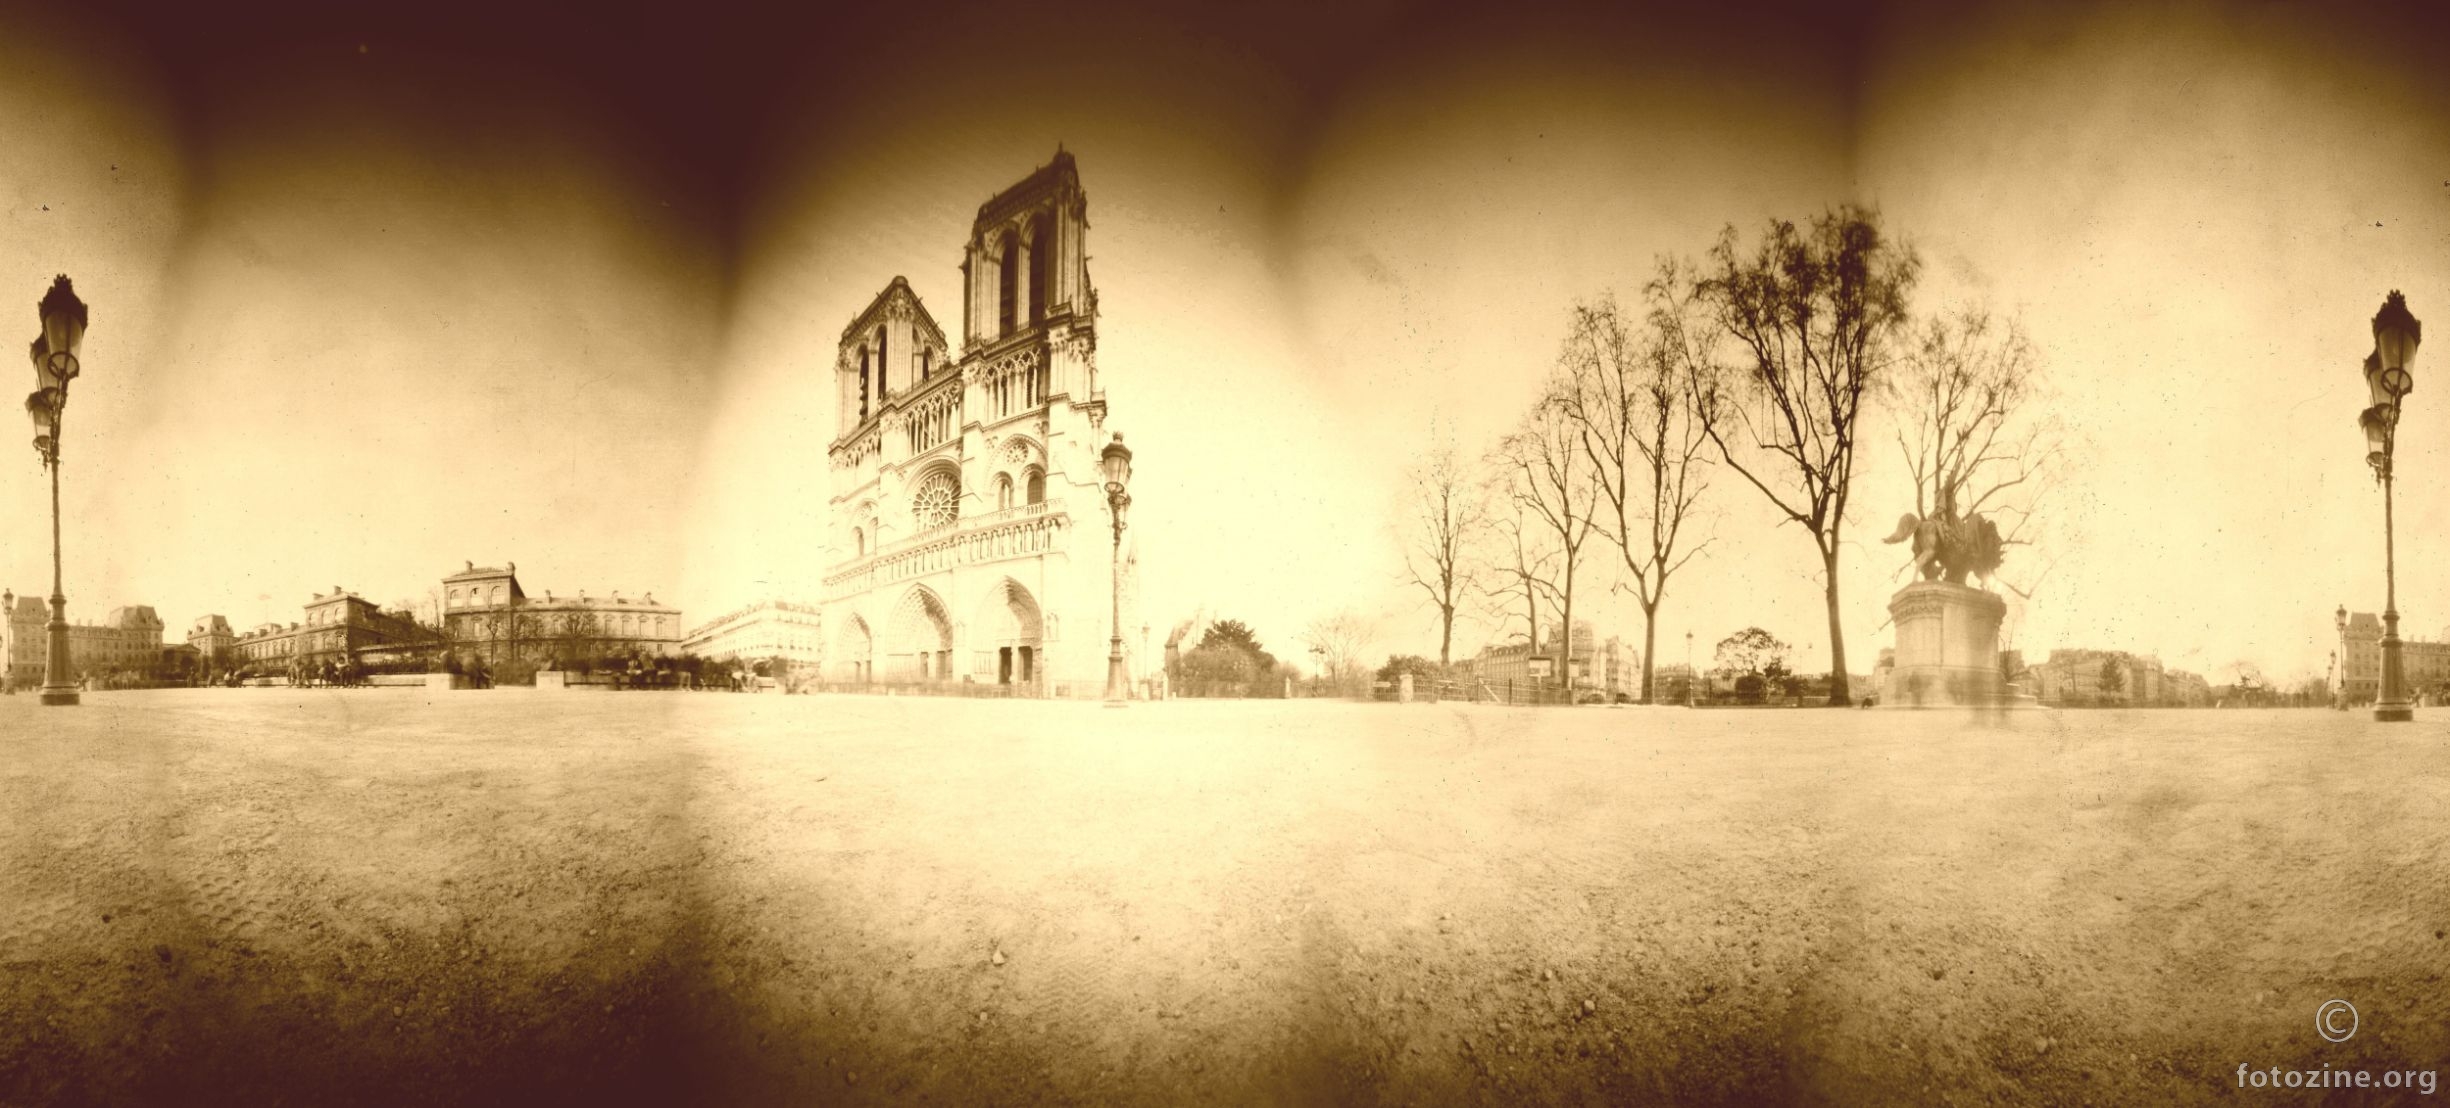 Parvis Notre-Dame – Place Jean-Paul II (drugi put)